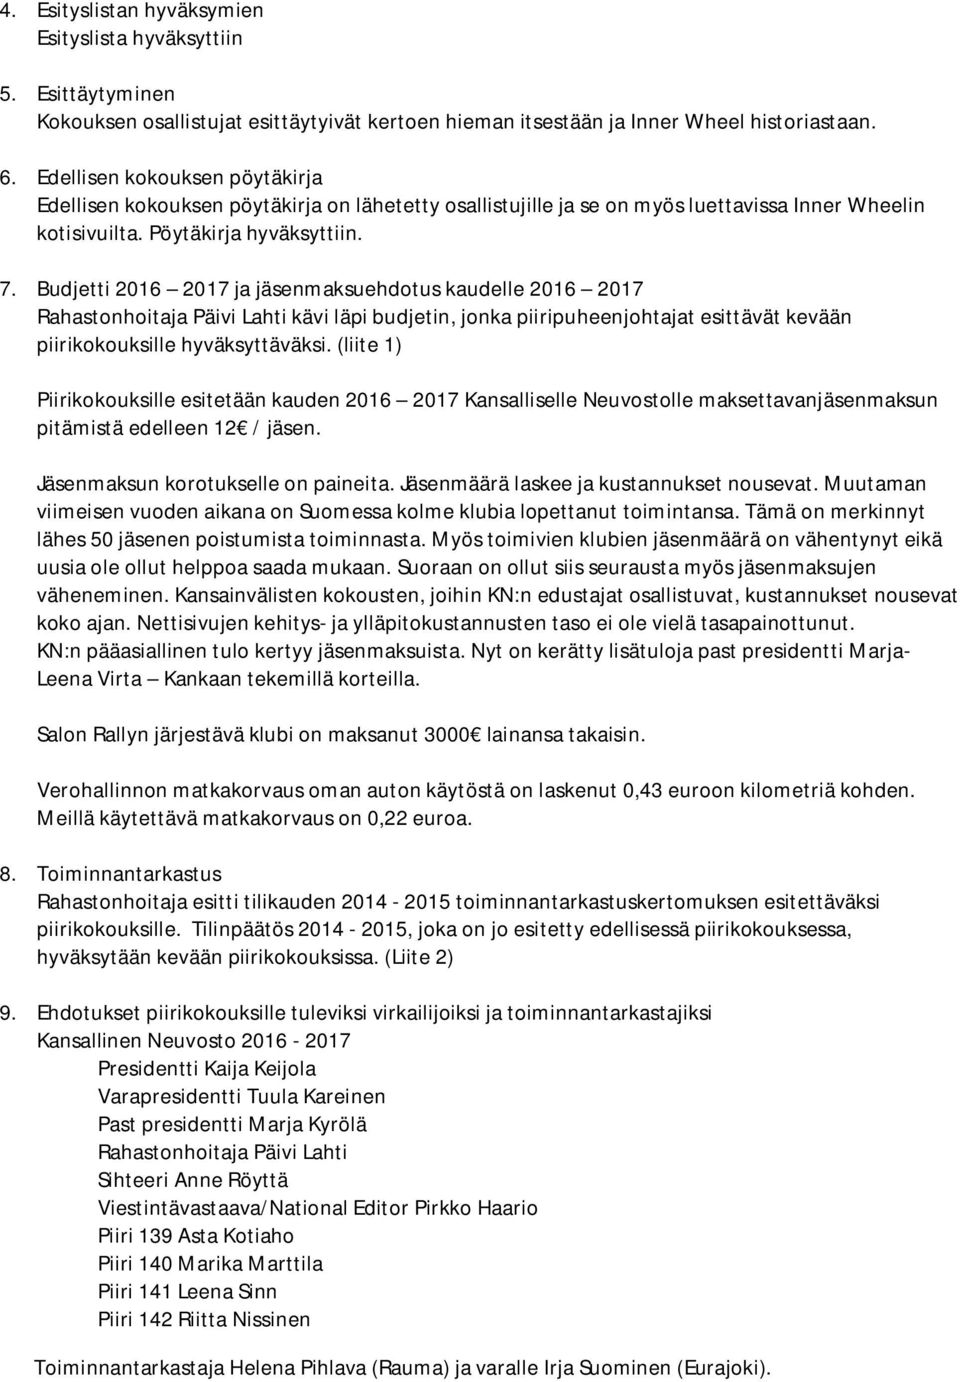 Budjetti 2016 2017 ja jäsenmaksuehdotus kaudelle 2016 2017 Rahastonhoitaja Päivi Lahti kävi läpi budjetin, jonka piiripuheenjohtajat esittävät kevään piirikokouksille hyväksyttäväksi.